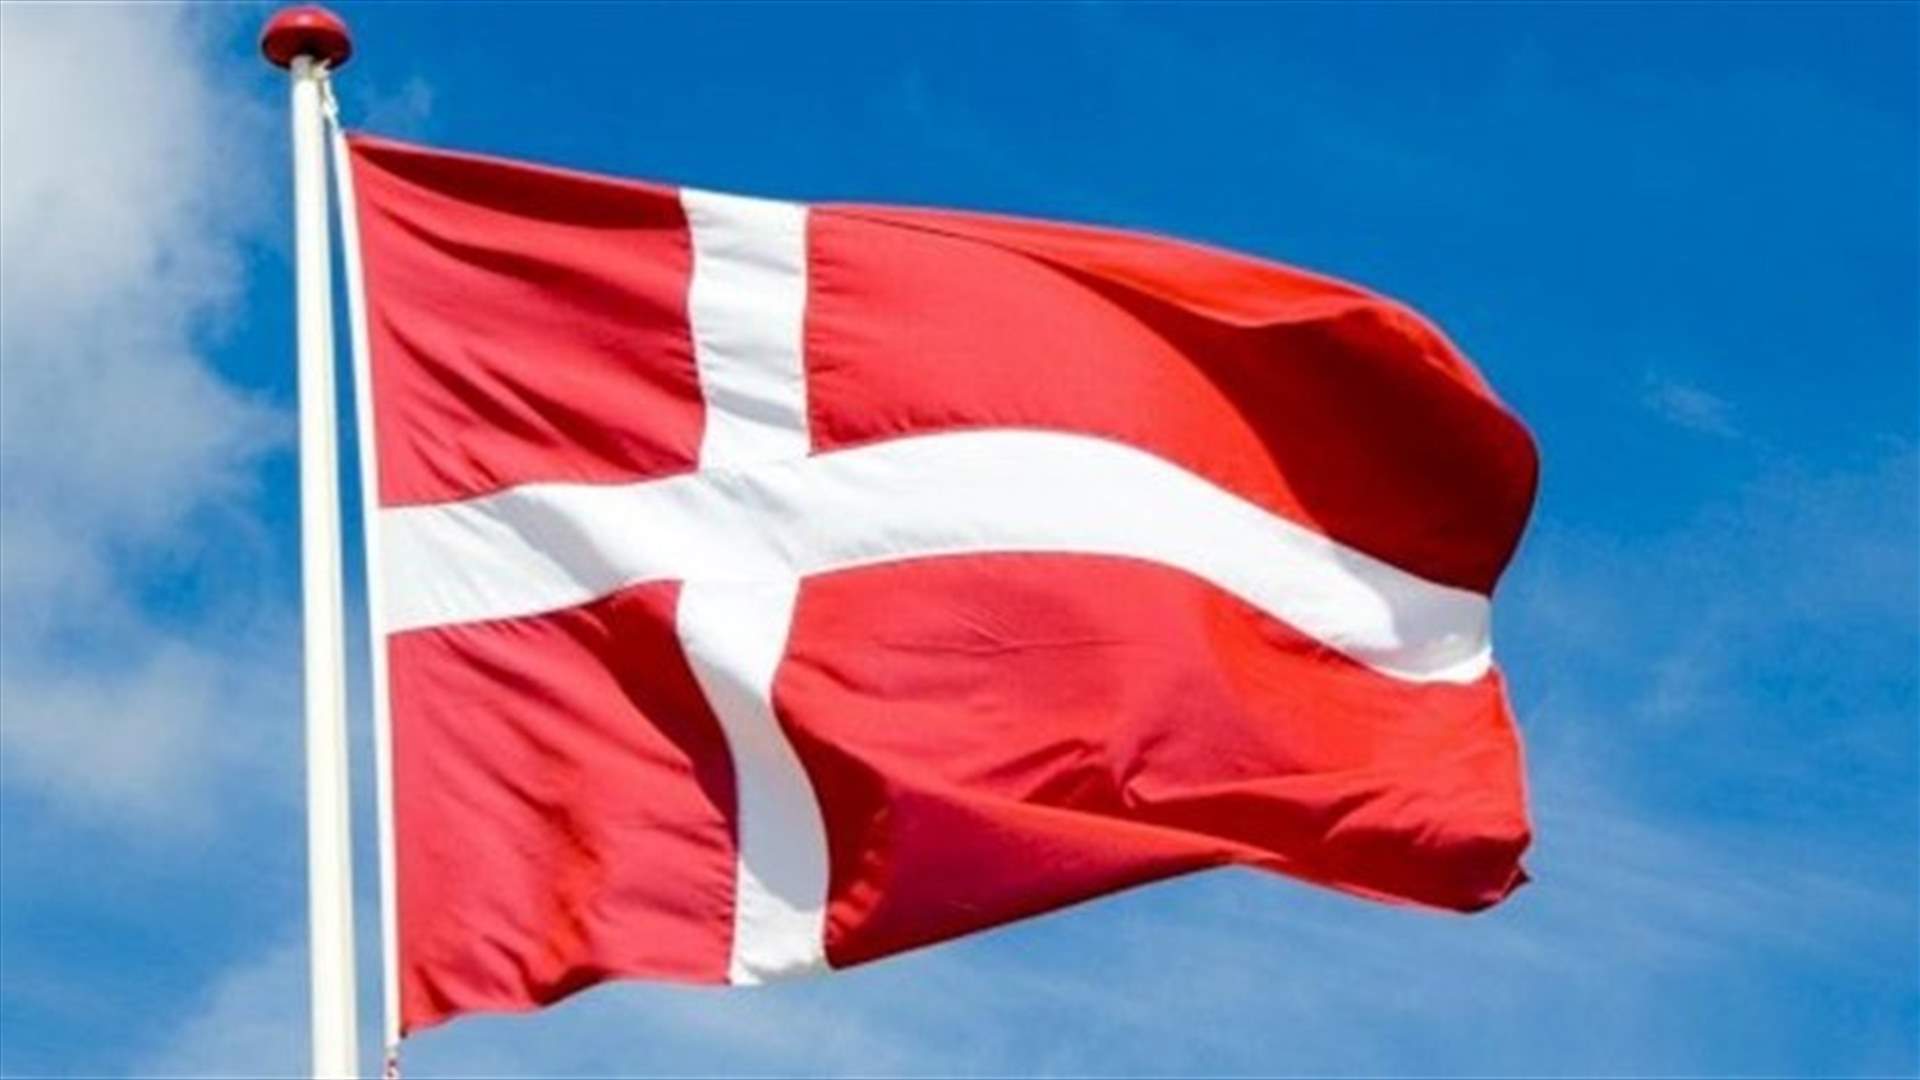 انتخابات تشريعية مبكرة في الدنمارك في الأول من تشرين الثاني